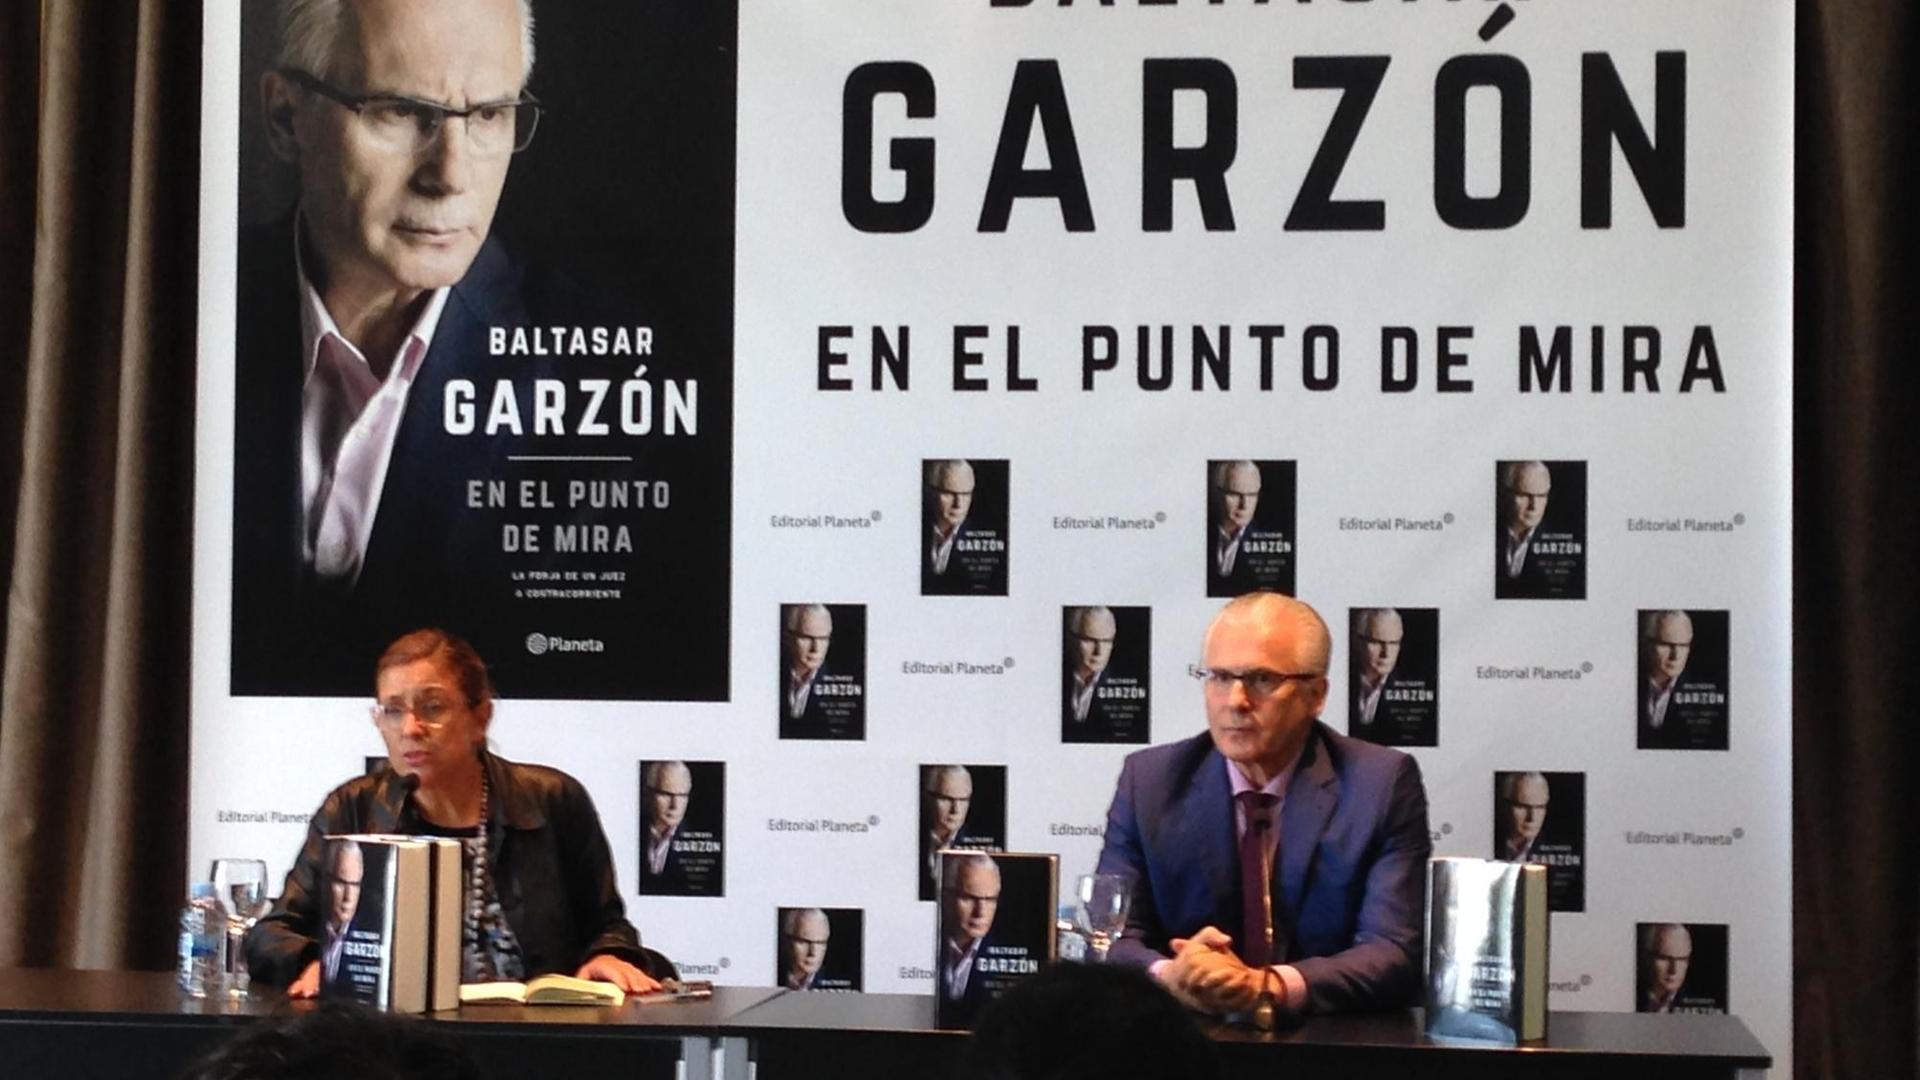 Baltasar Garzón auf der Buchpräsentation im Oktober 2016.